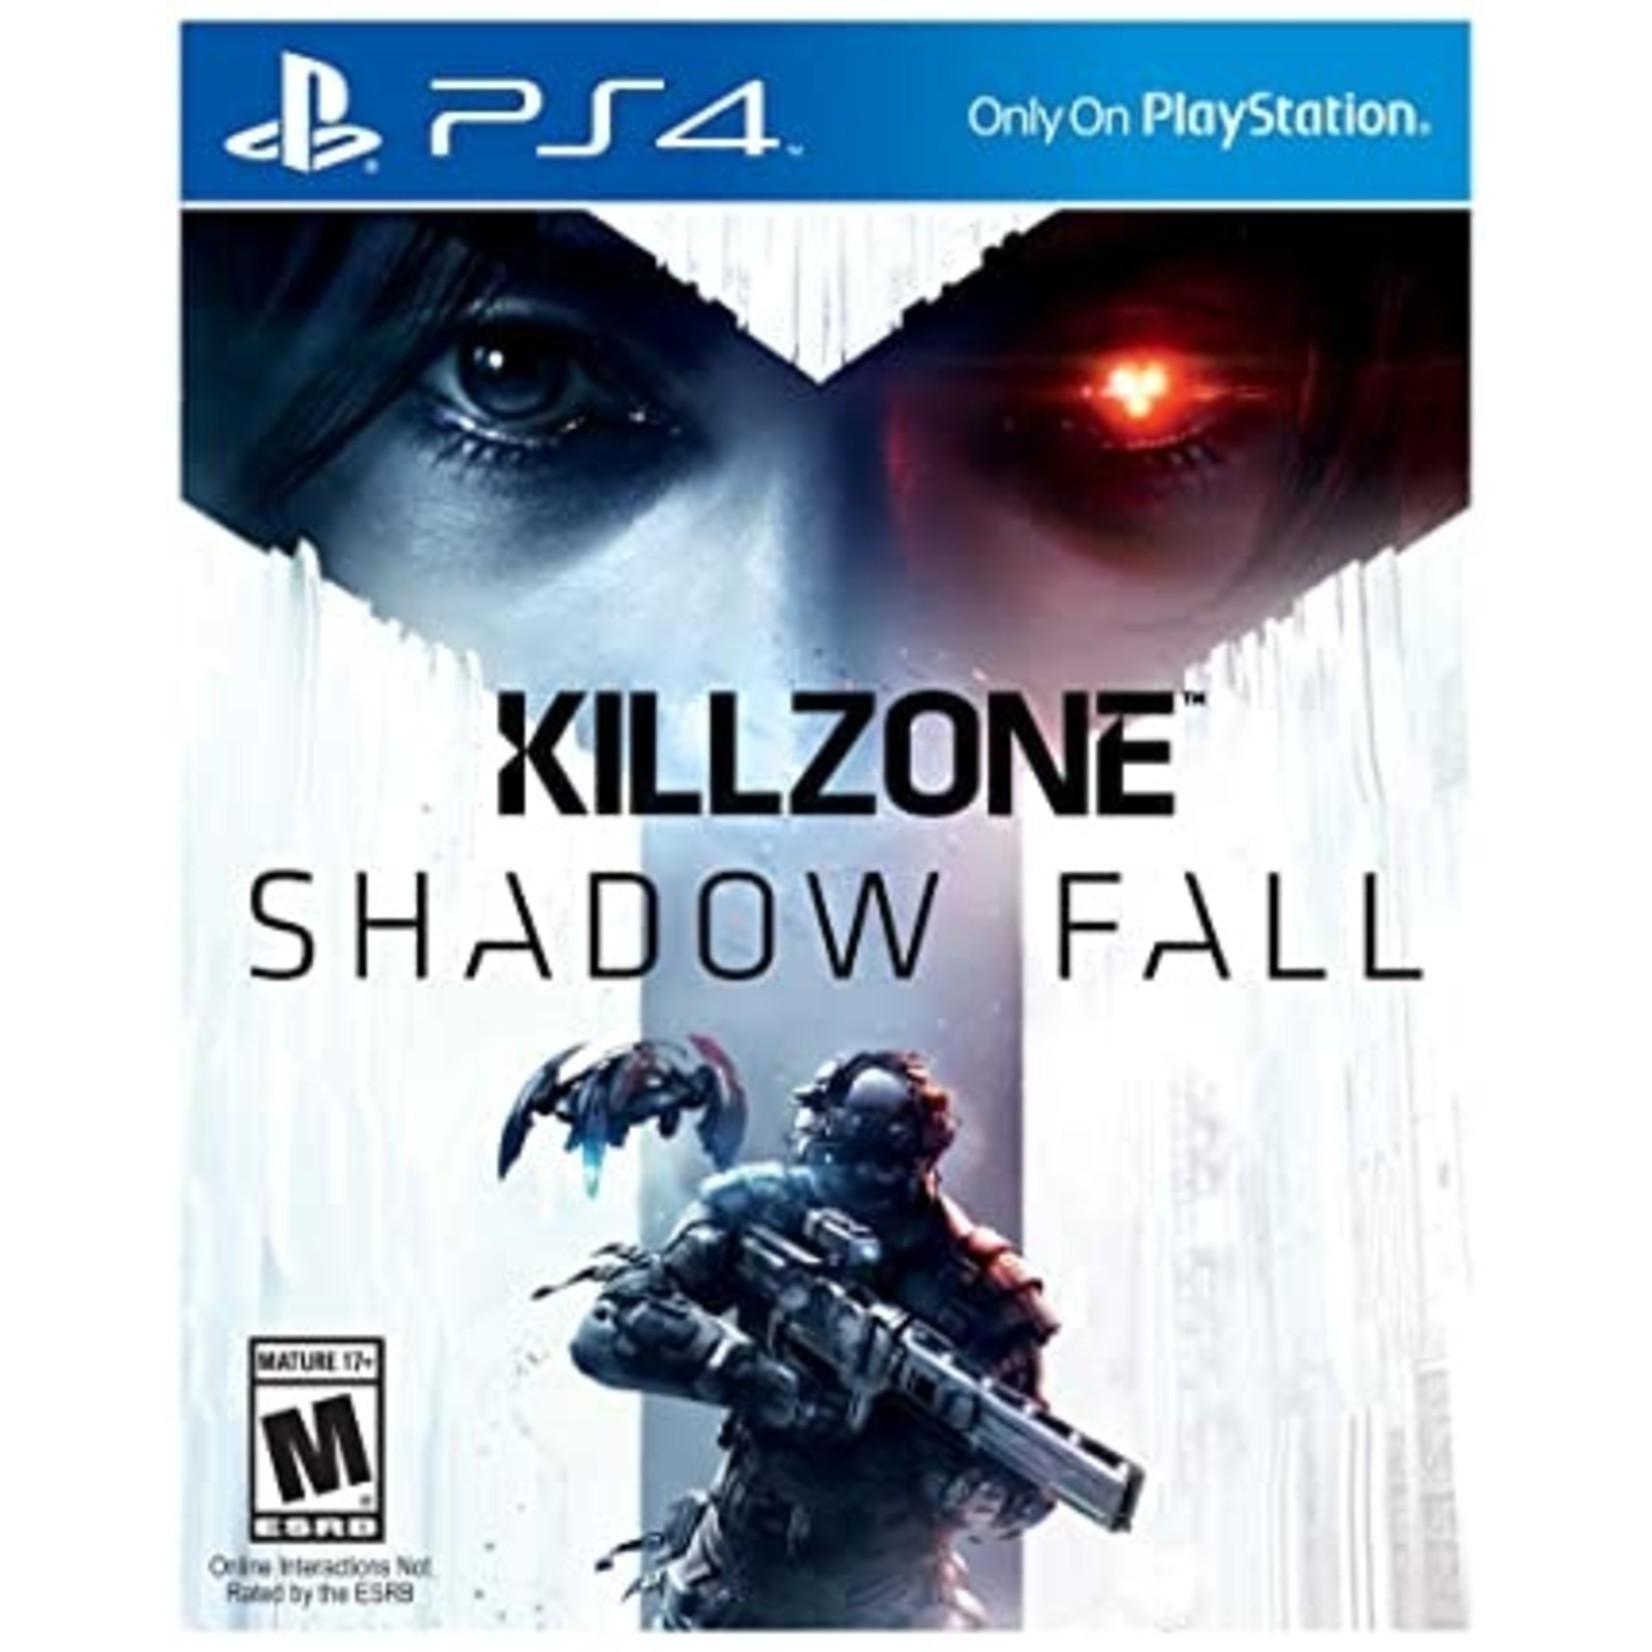 PS4-KILLZONE: SHADOW FALL